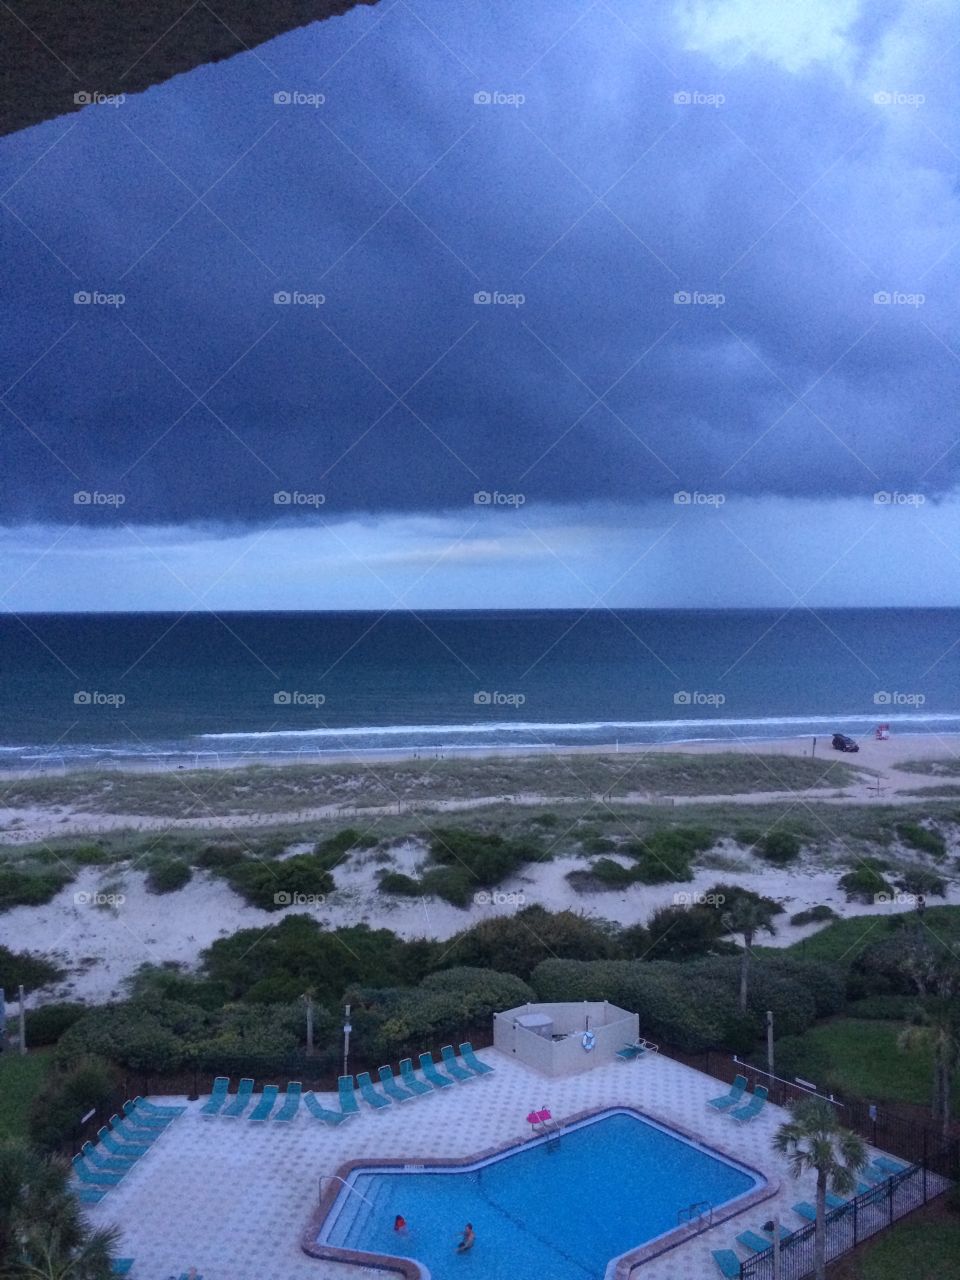 Stormy day in Amelia Island, Florida. 